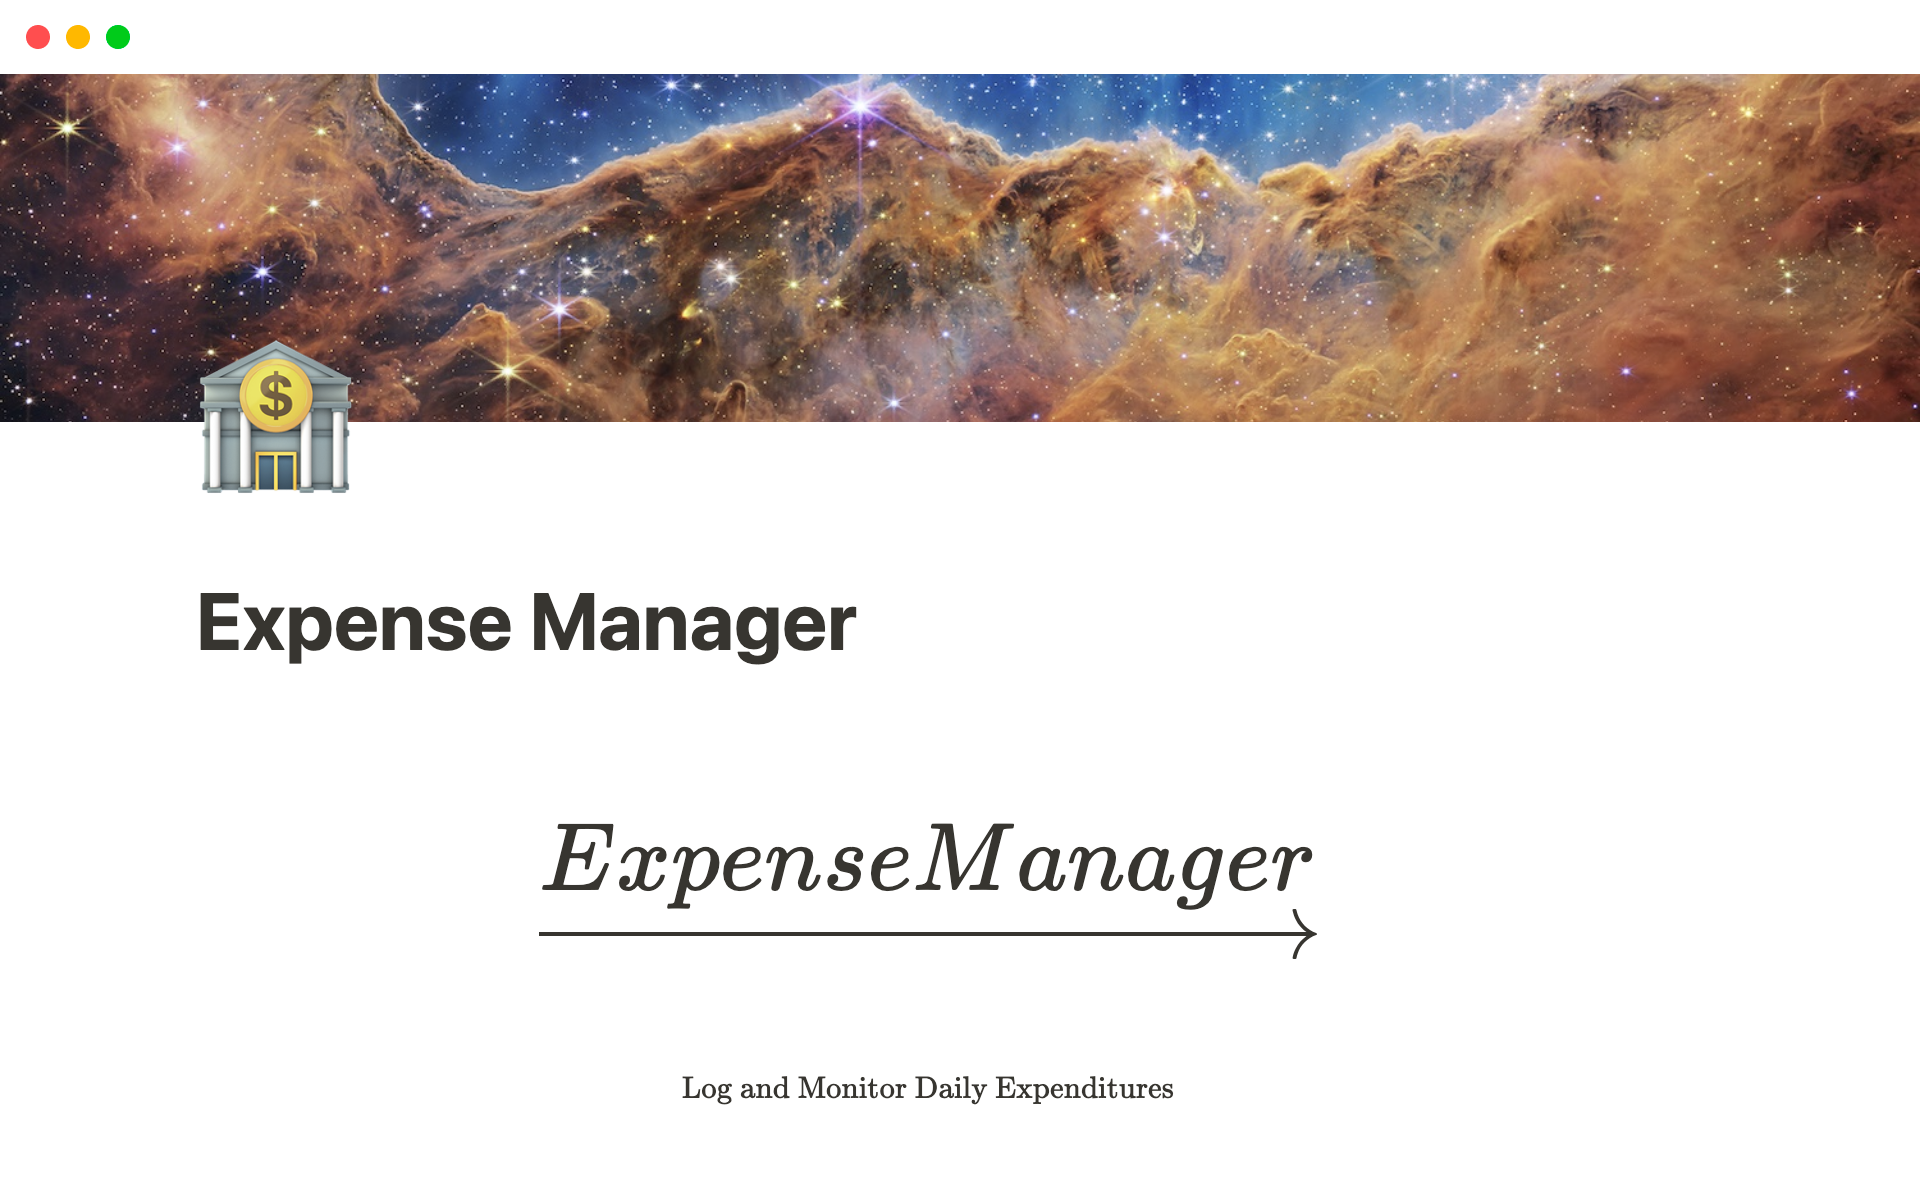 Uma prévia do modelo para Expense Manager